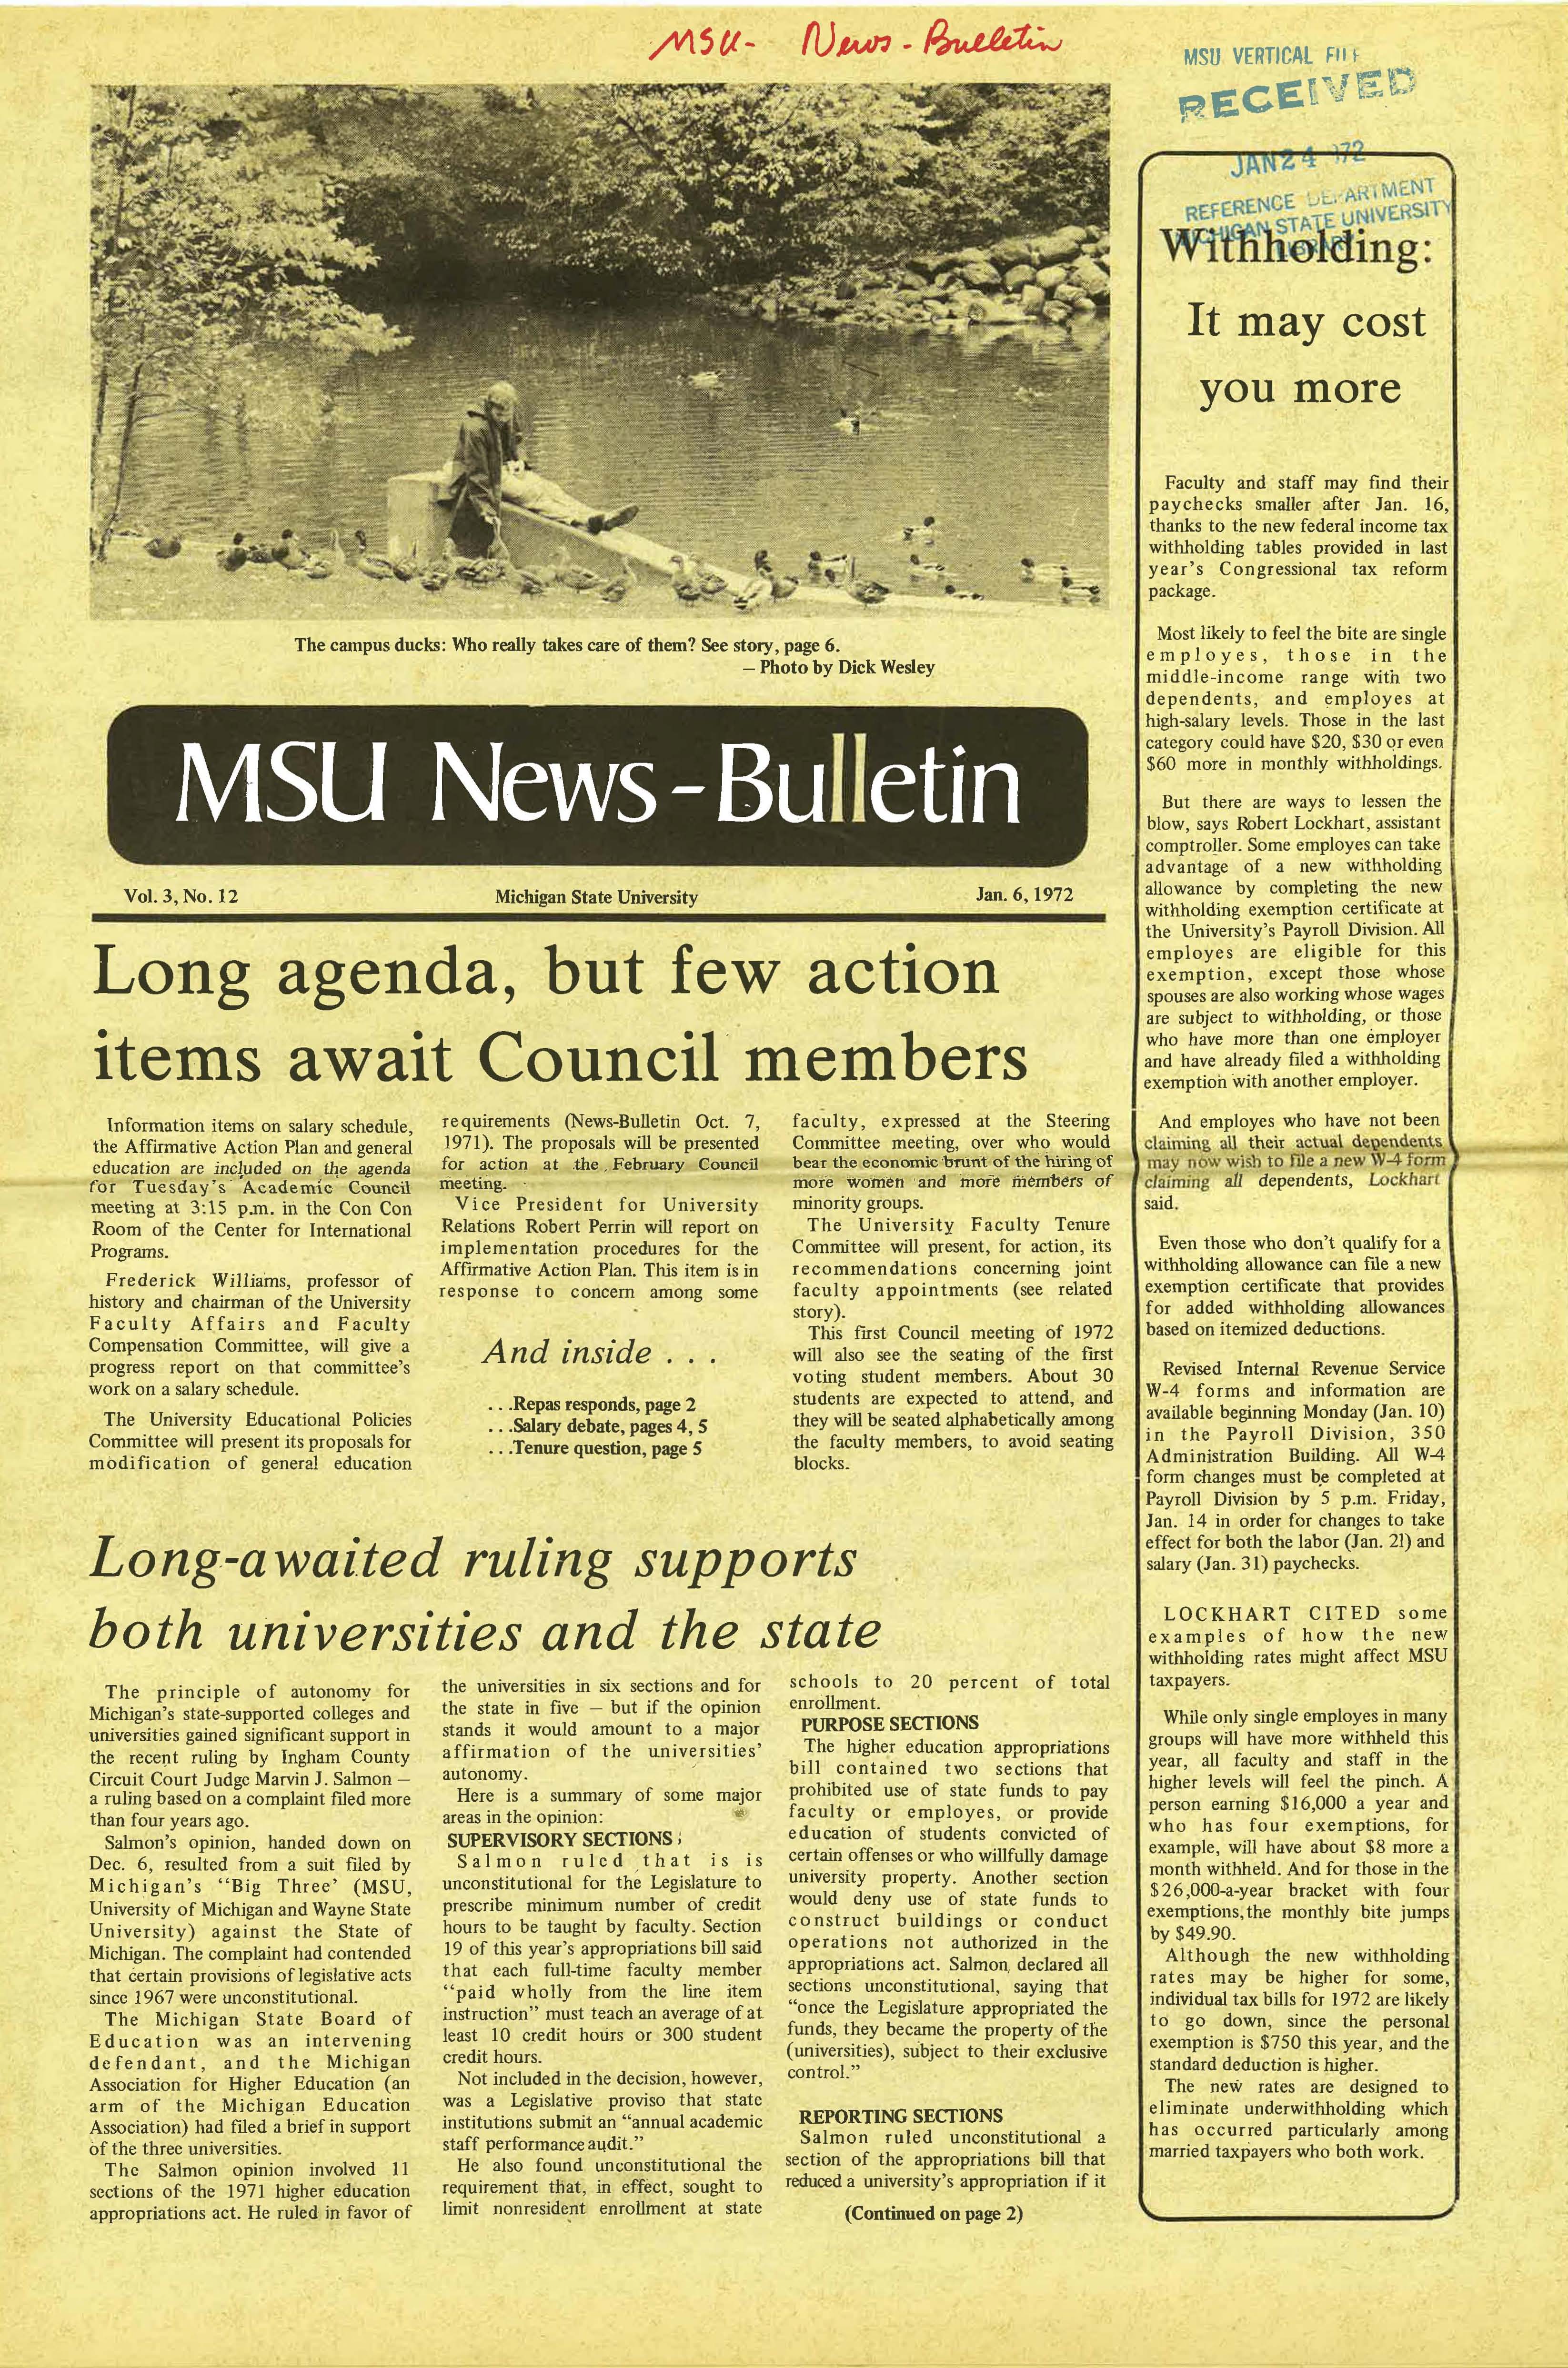 MSU News Bulletin, vol. 3, No. 32, June 8, 1972